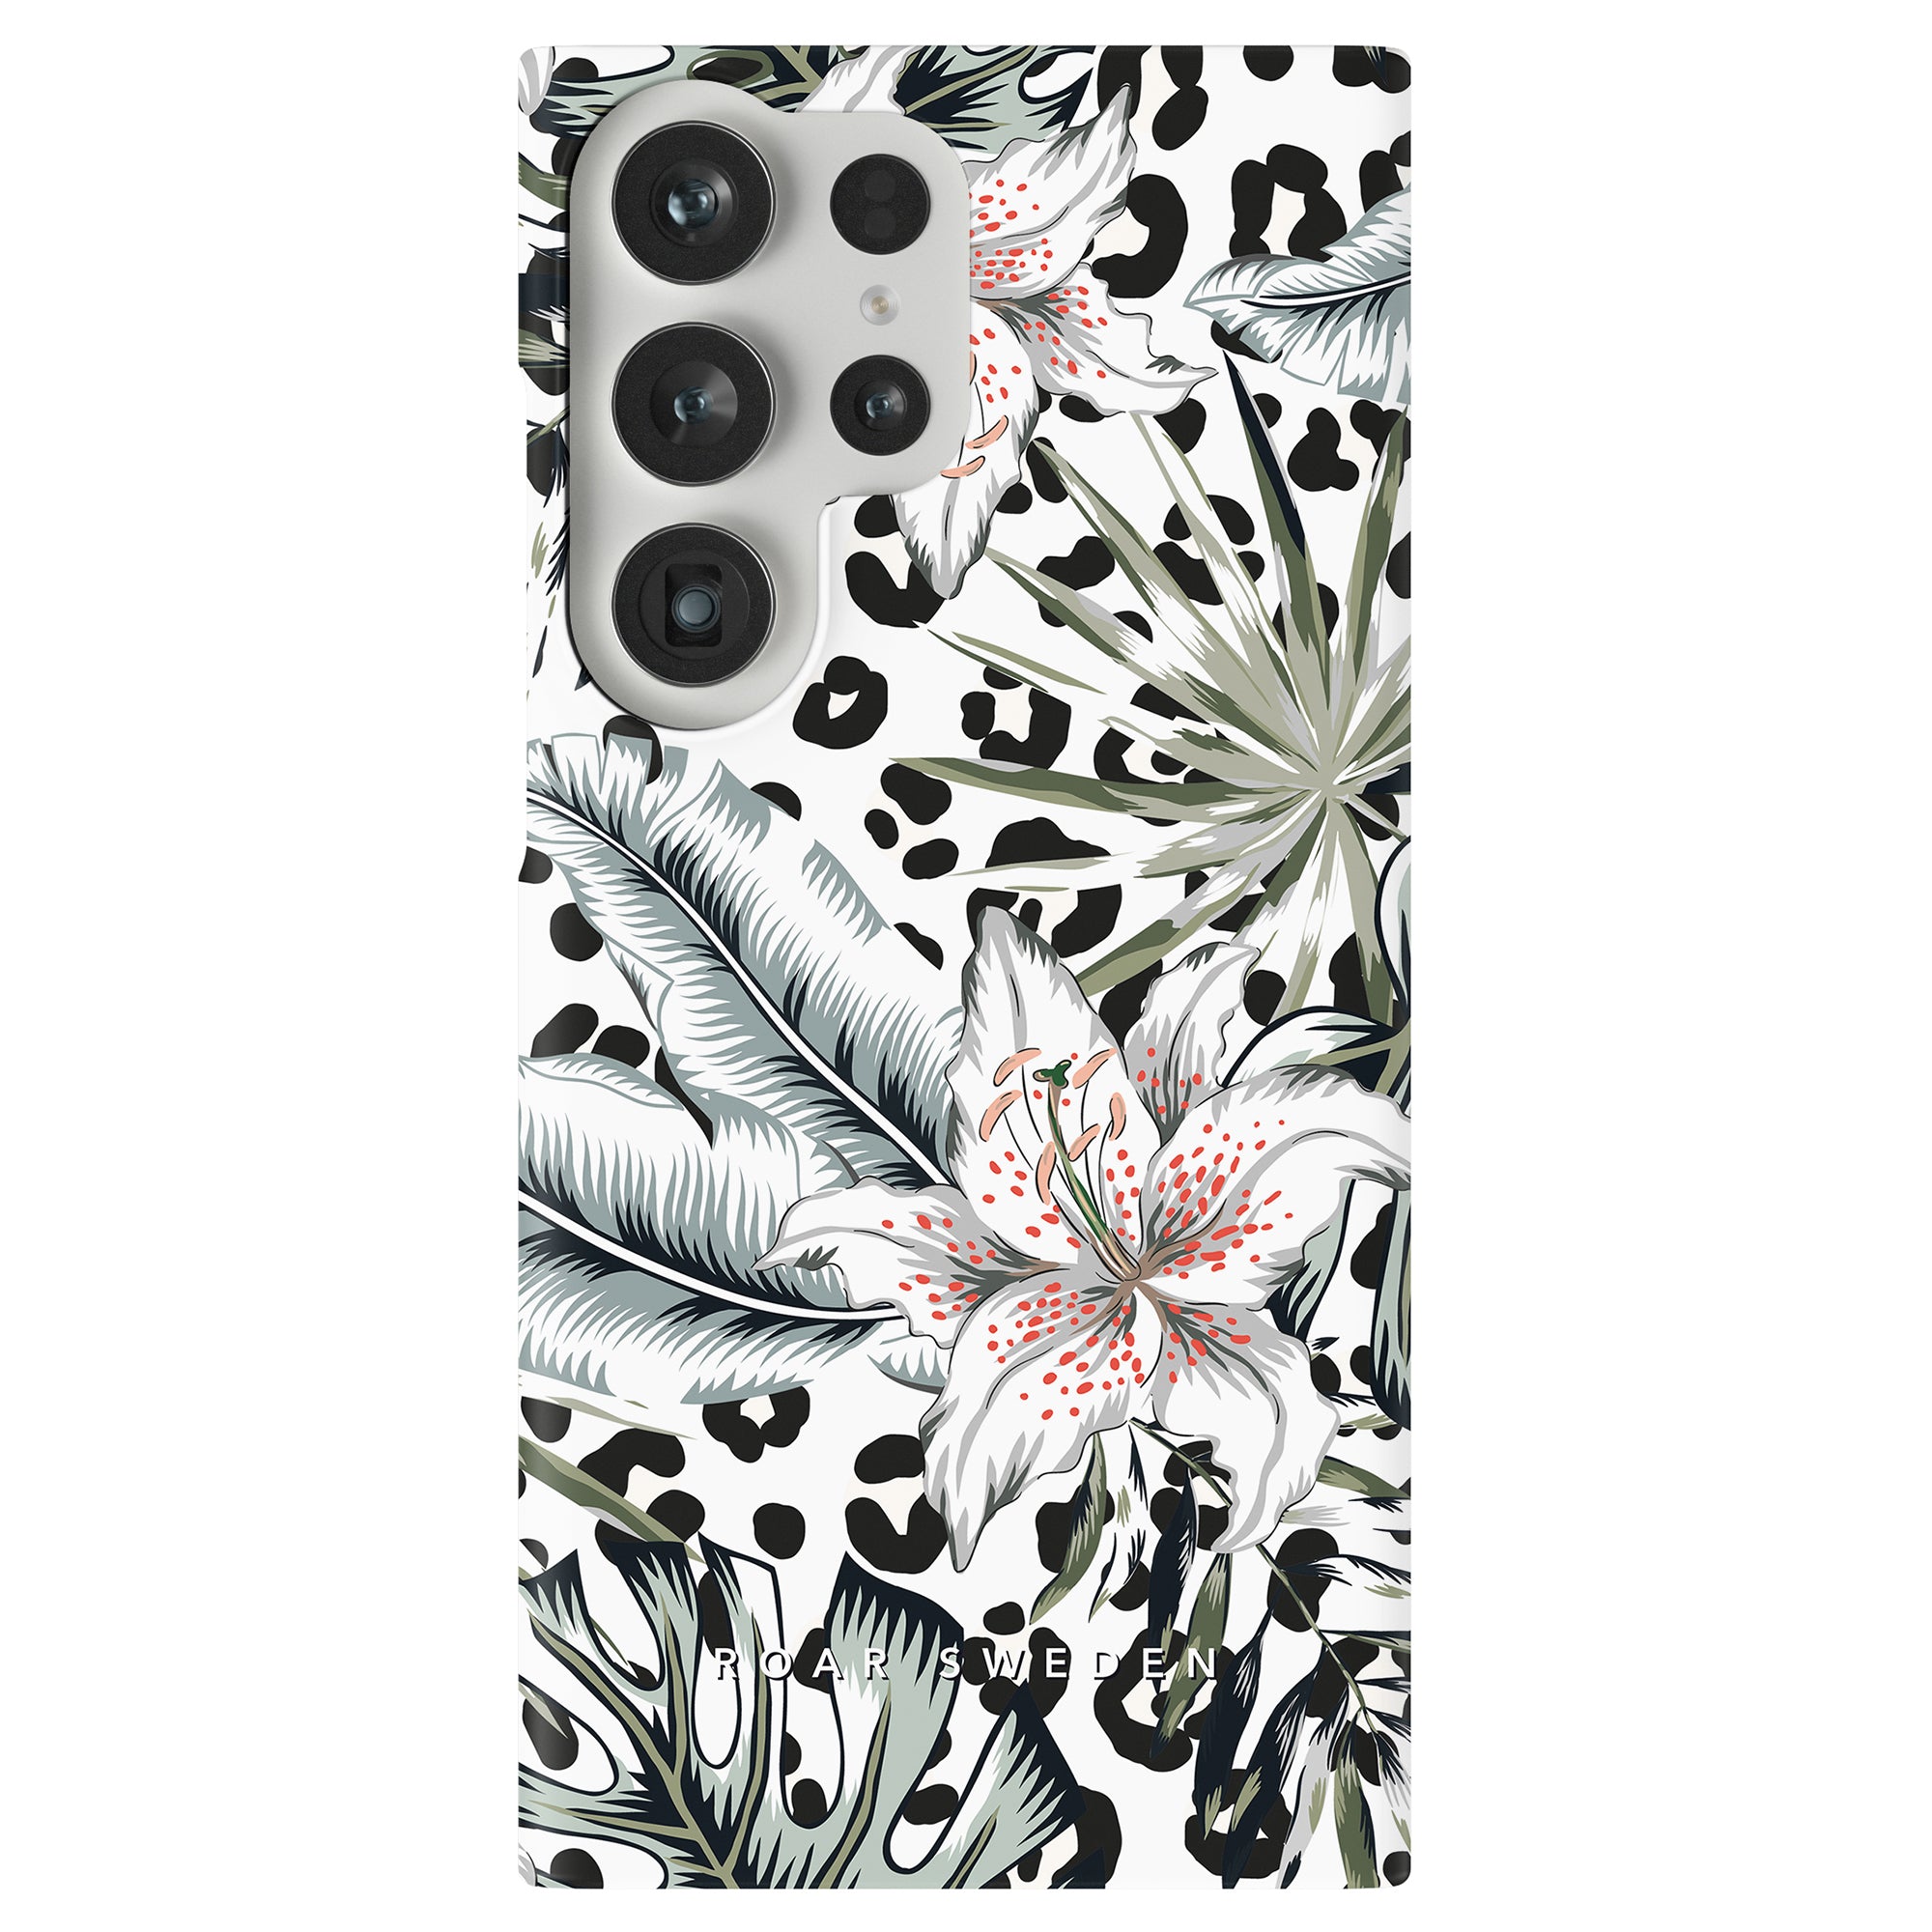 En svartvit mobilskal med leopardtryck och blommor. Namnet på produkten är Lily - Slim case.